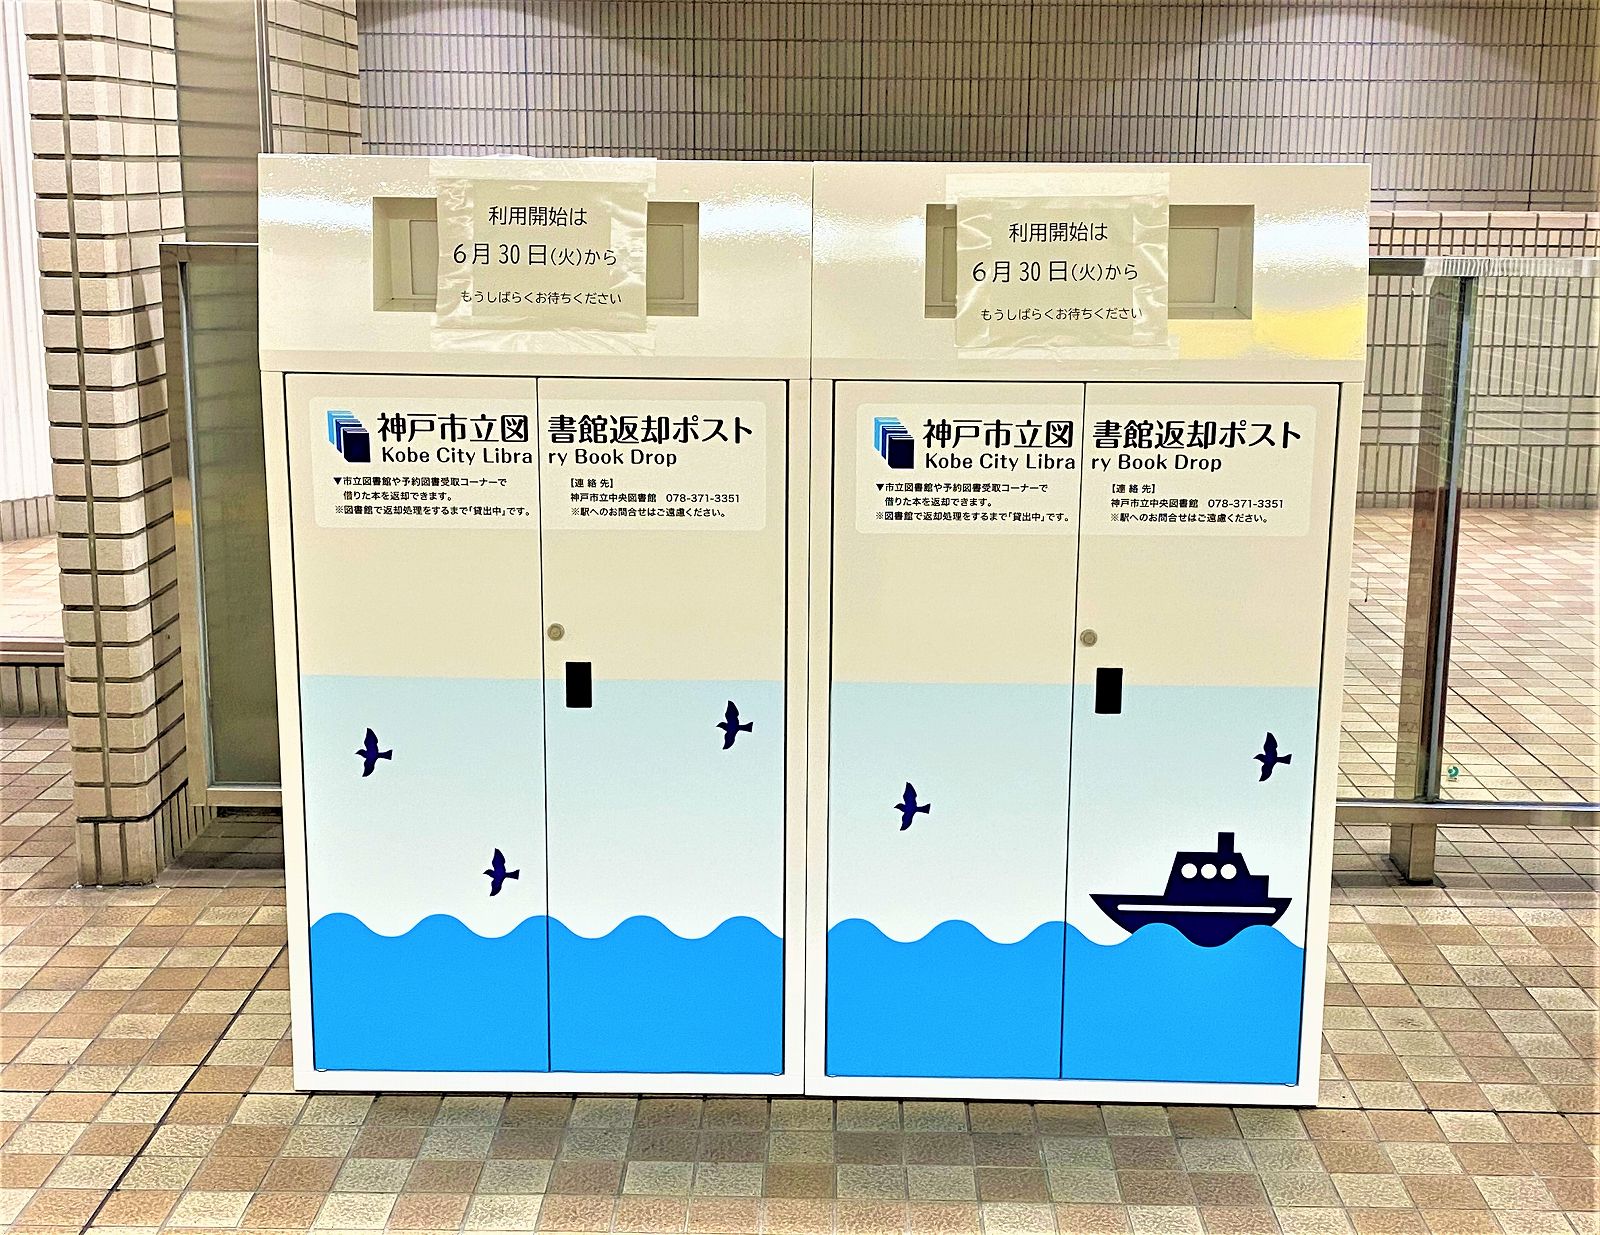 神戸市立図書館「予約図書自動受取機」での貸出サービスが6月30日（火）からスタート！地下鉄「三宮・花時計前駅」前に設置された受取機を見てきた